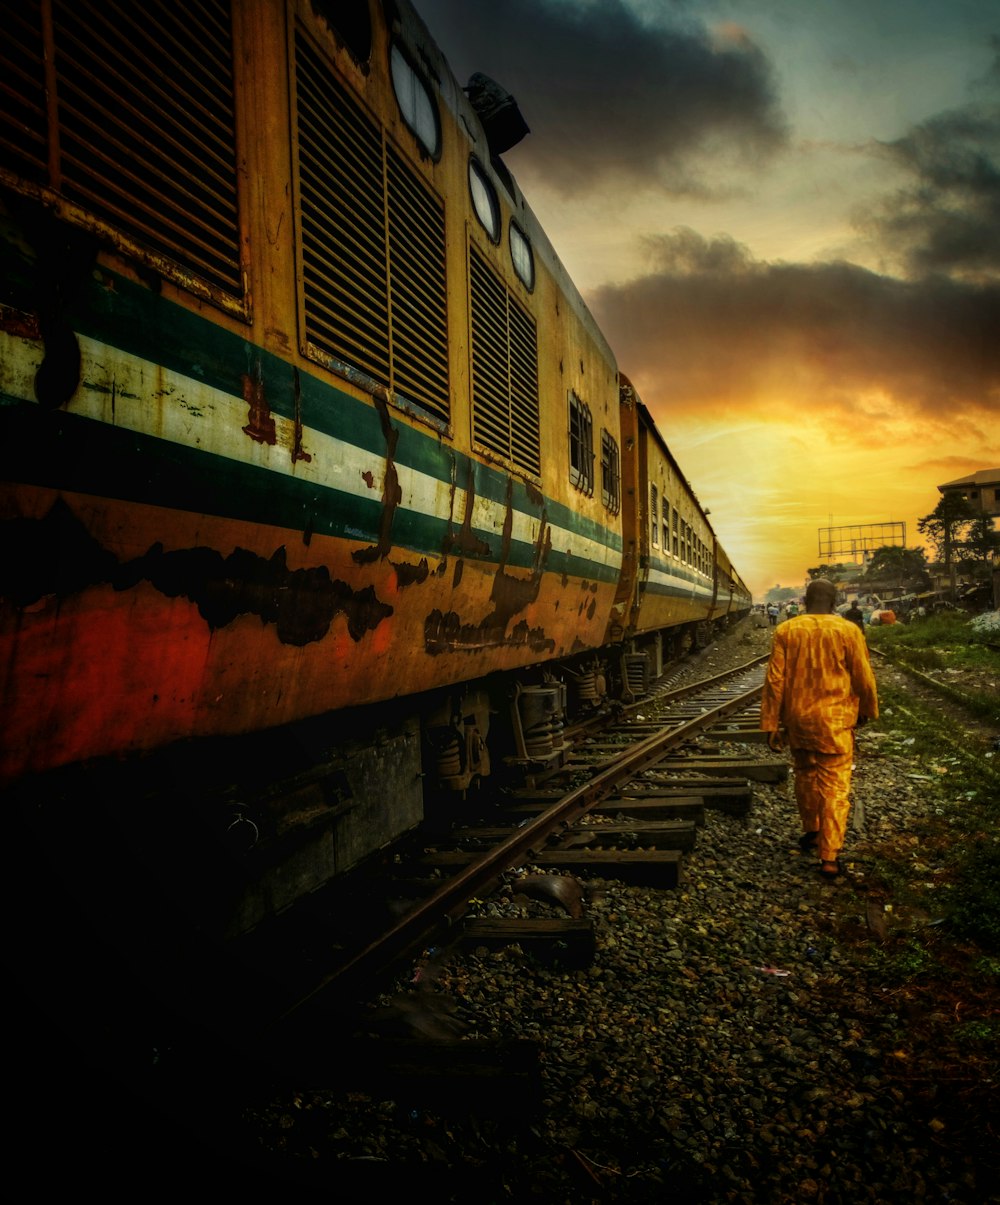 Eine Person in einem gelben Outfit geht auf Bahngleisen